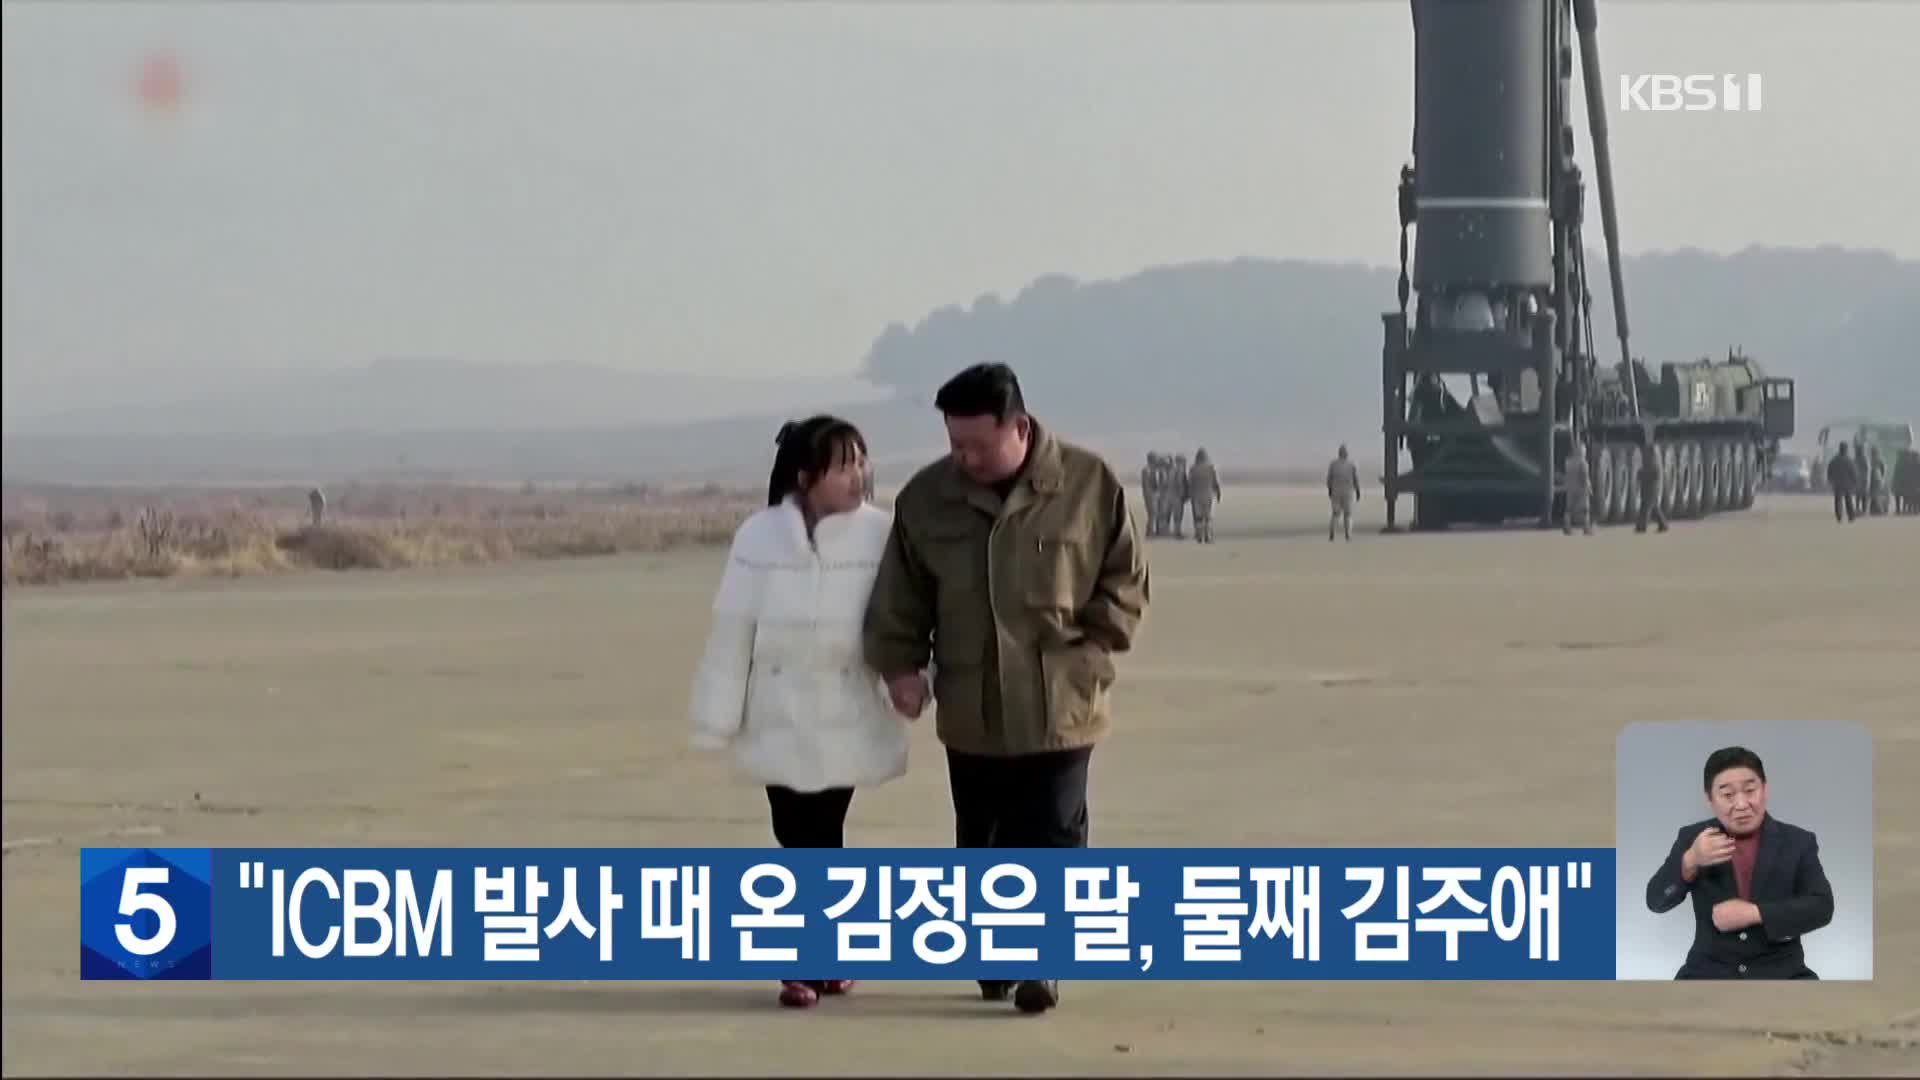 “ICBM 발사 때 온 김정은 딸, 둘째 김주애”